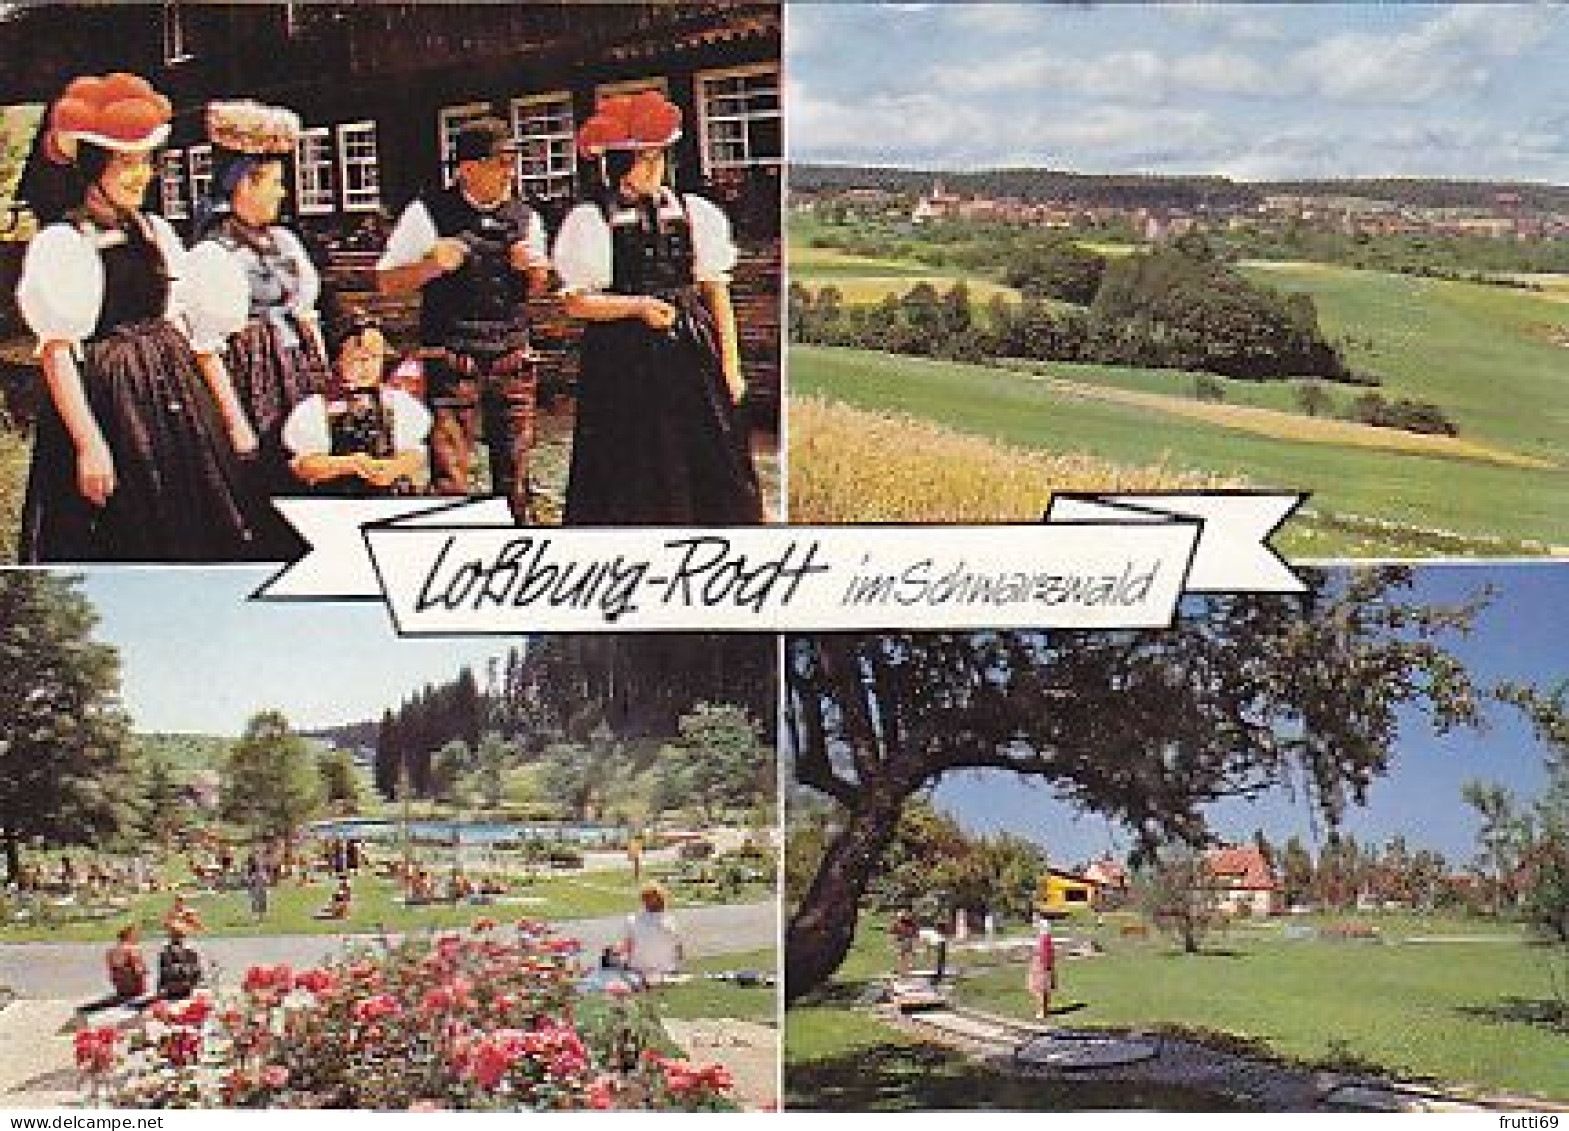 AK 211835 GERMANY - Lossburg-Rodt - Hochschwarzwald